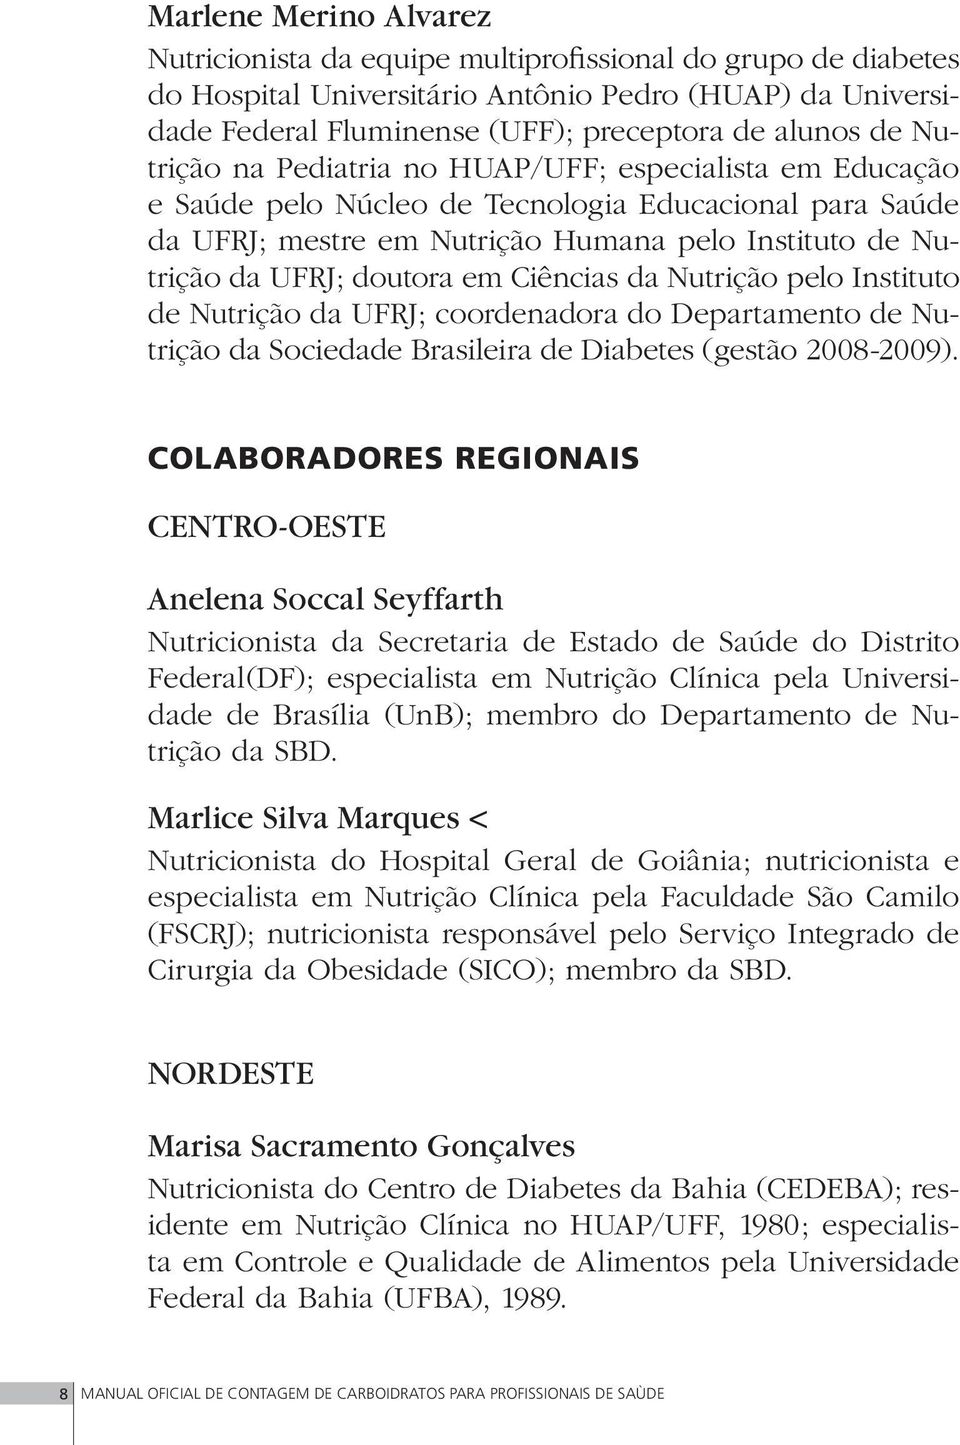 Ciências da Nutrição pelo Instituto de Nutrição da UFRJ; coordenadora do Departamento de Nutrição da Sociedade Brasileira de Diabetes (gestão 2008-2009).